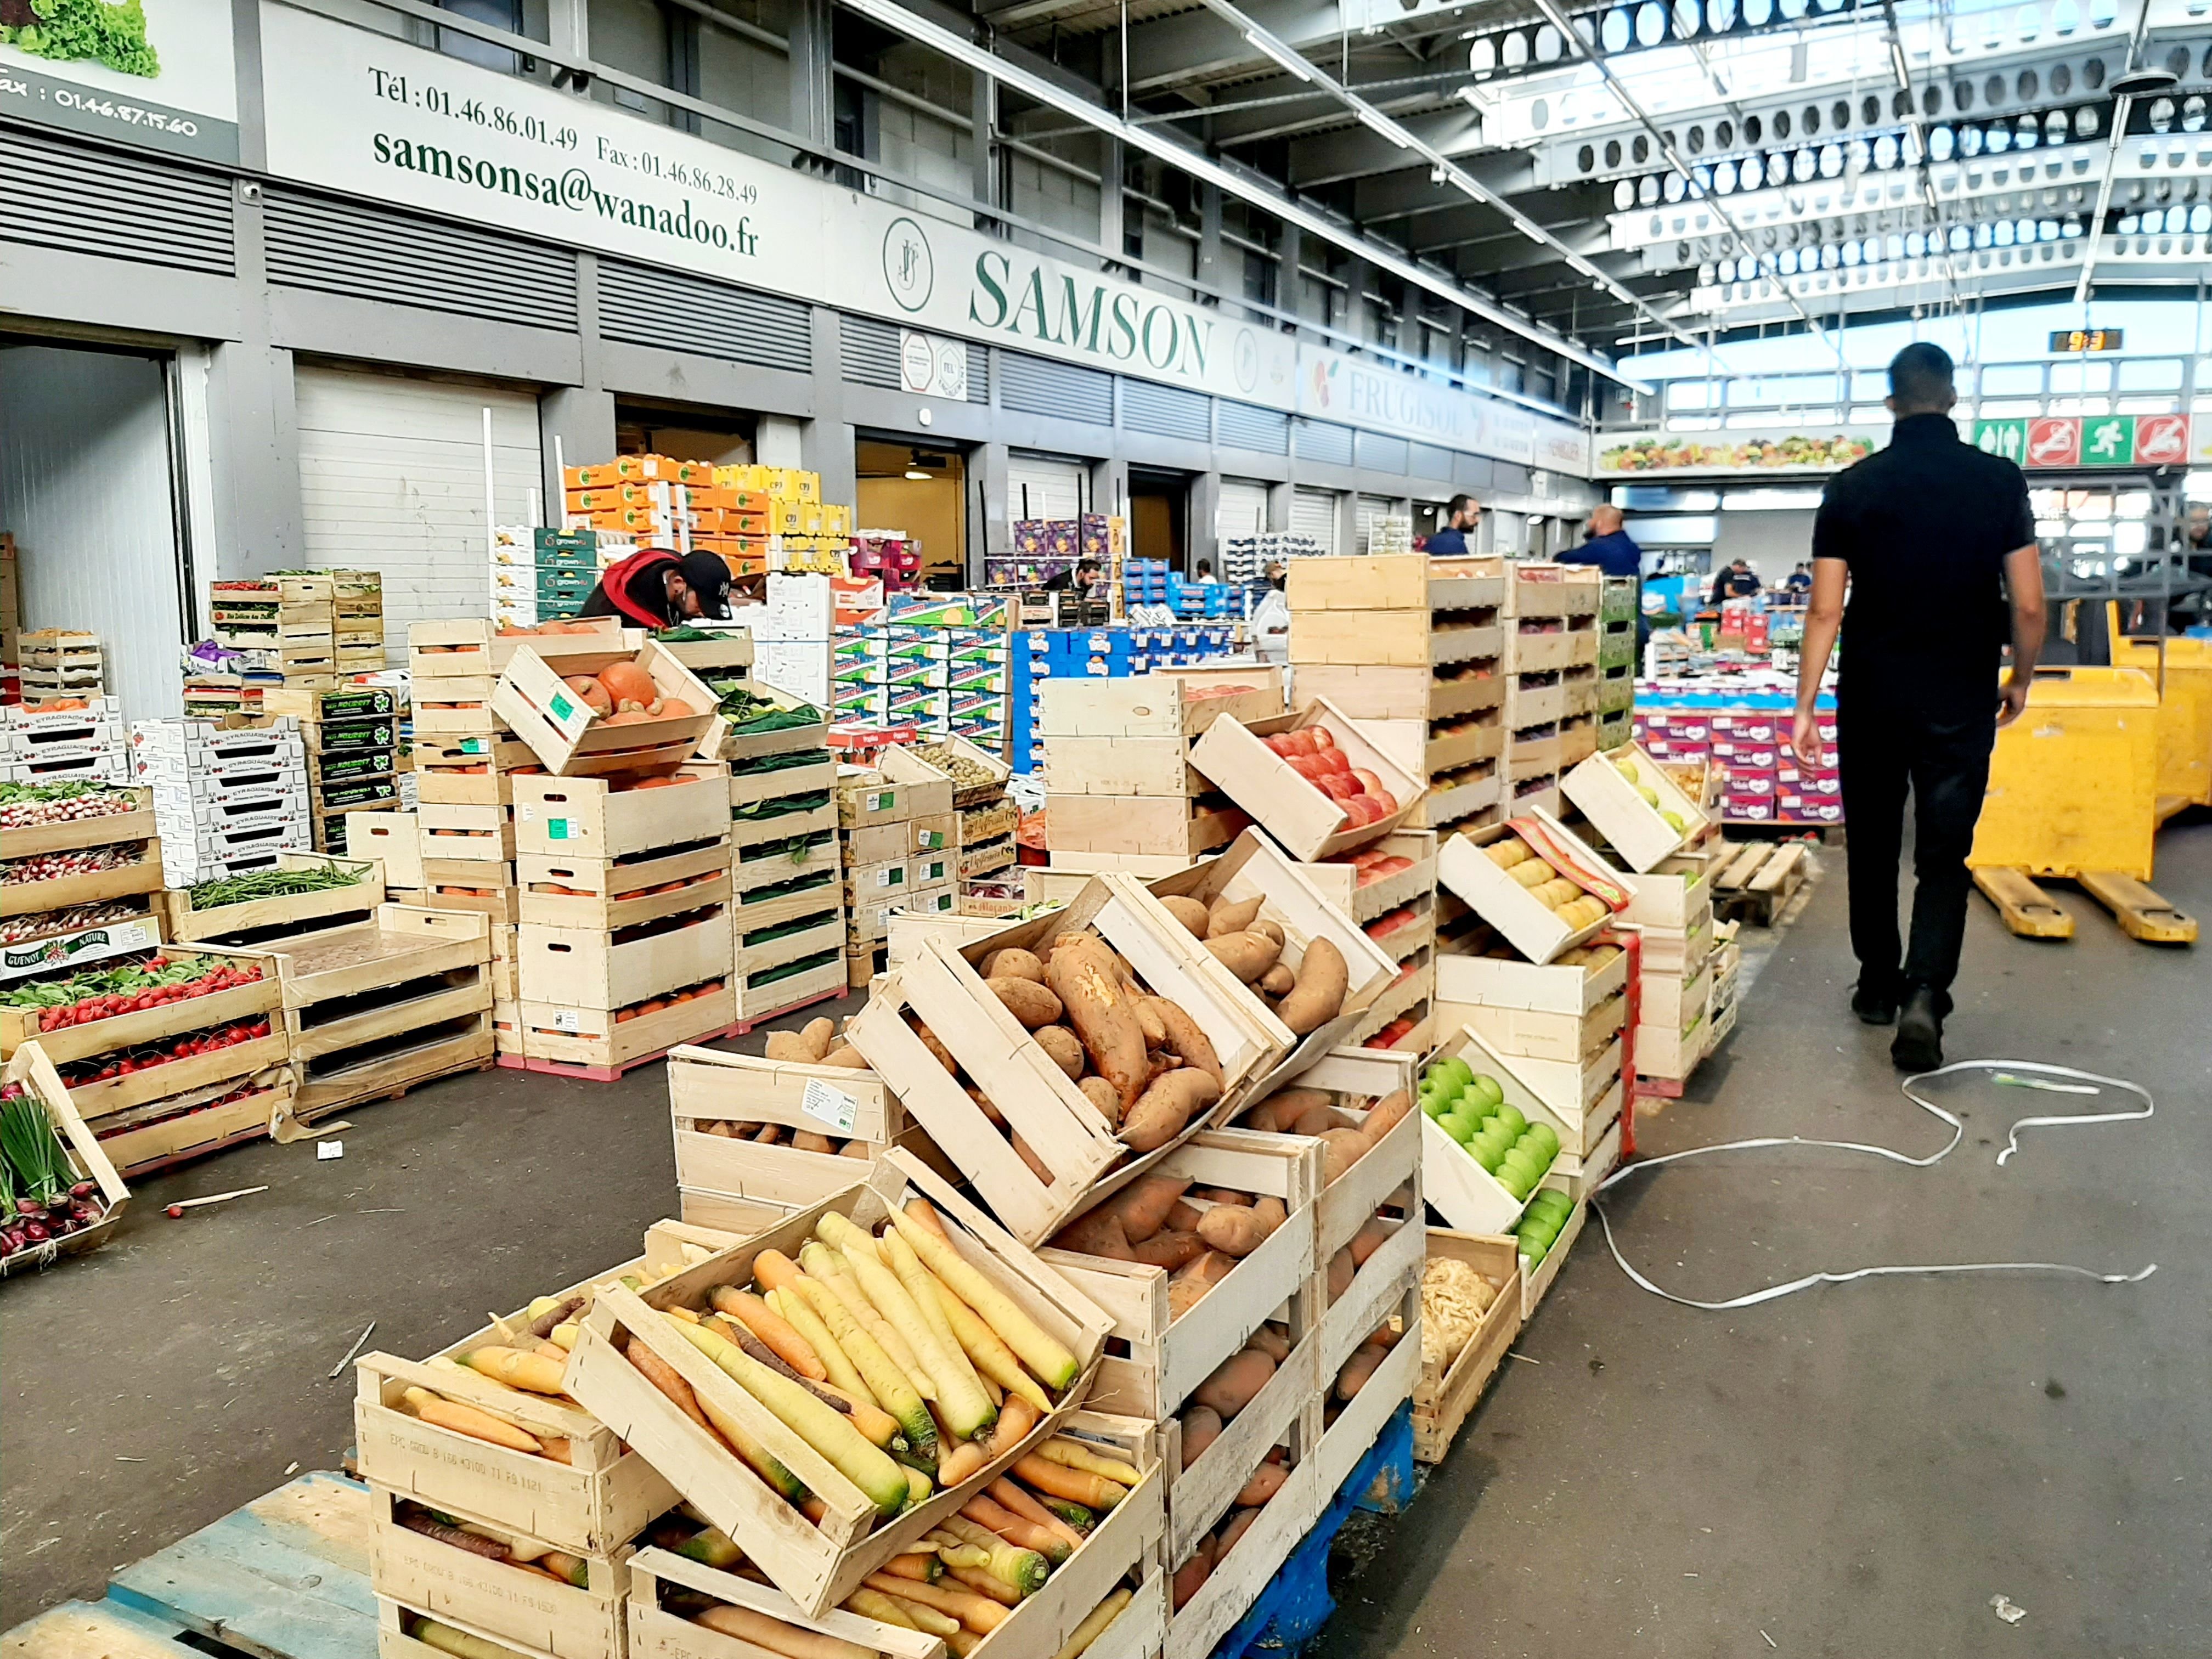 Le marché de Rungis (Val-de-Marne) est la plaque tournante de la distribution de denrées alimentaires en Île-de-France, notamment pour les professionnels de la restauration. LP/Marine Legrand